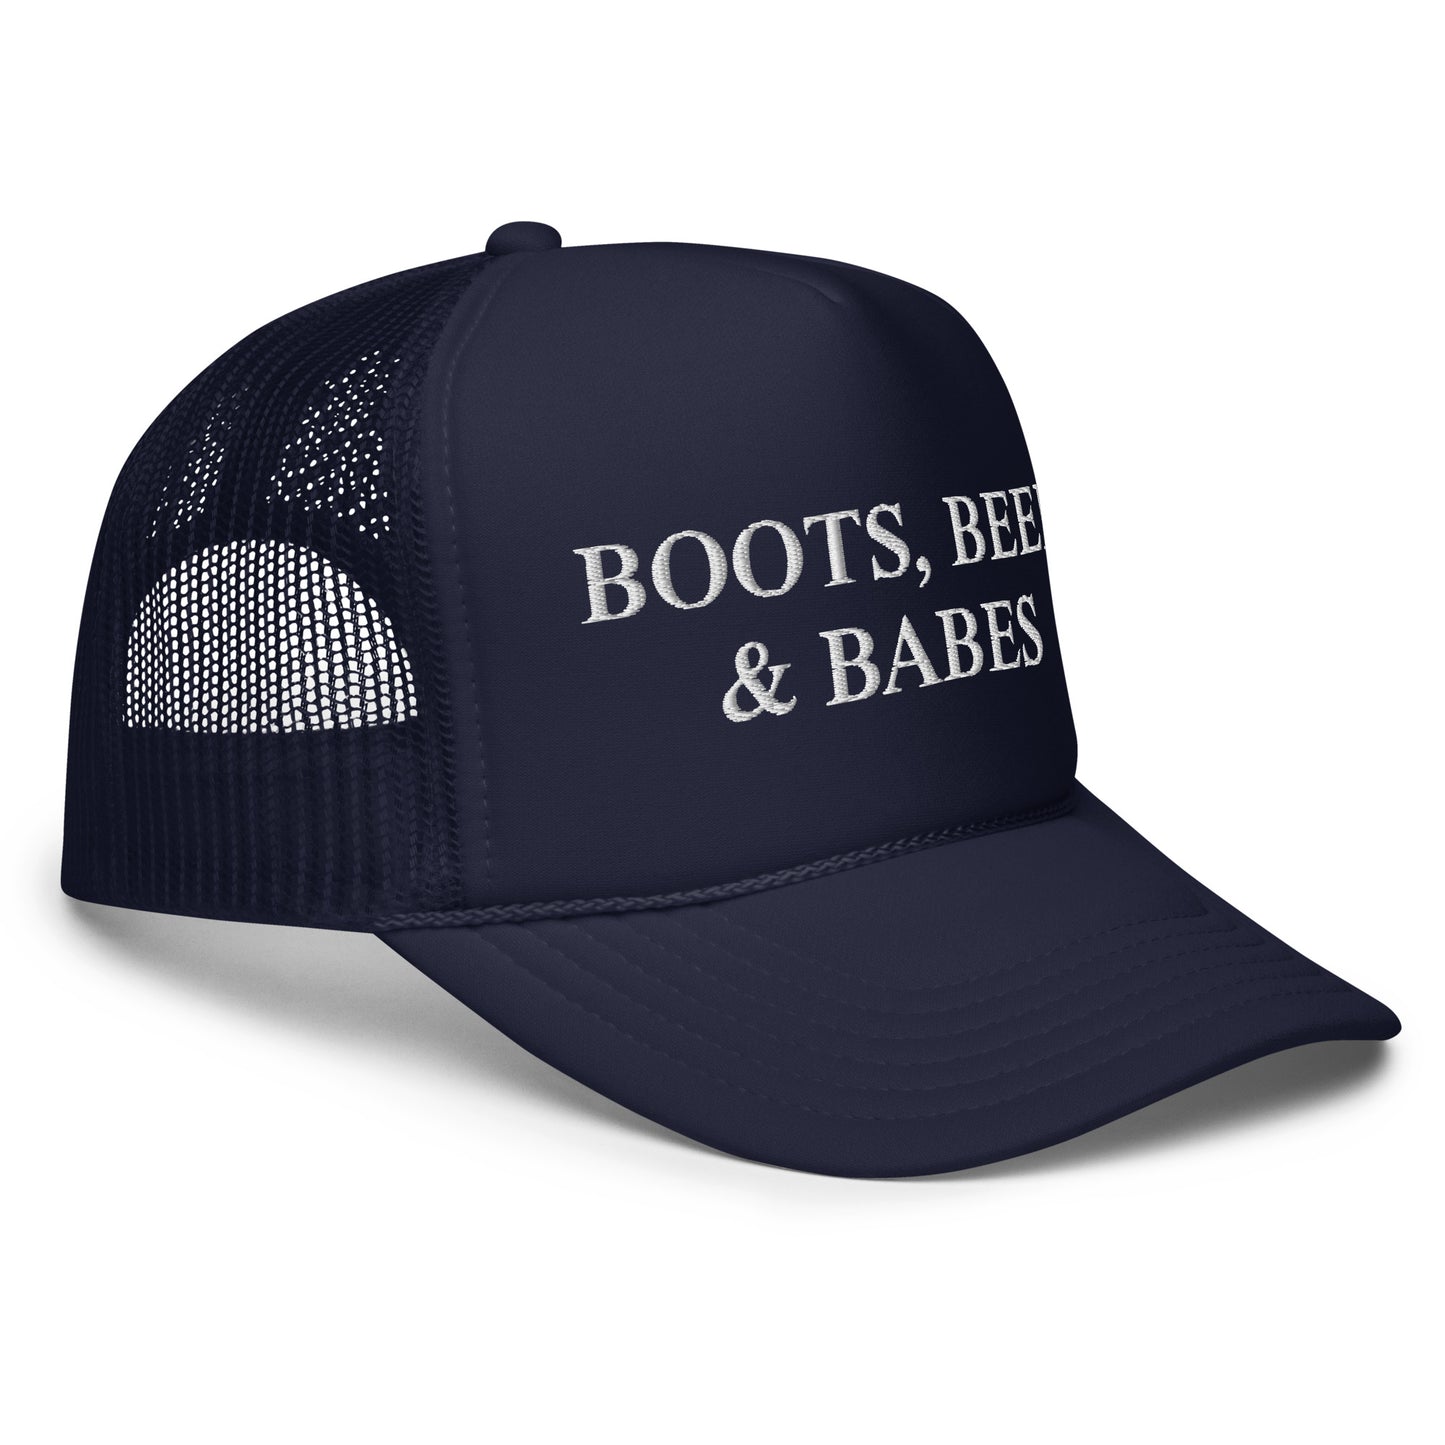 Boots, Beer & Babes Foam trucker hat